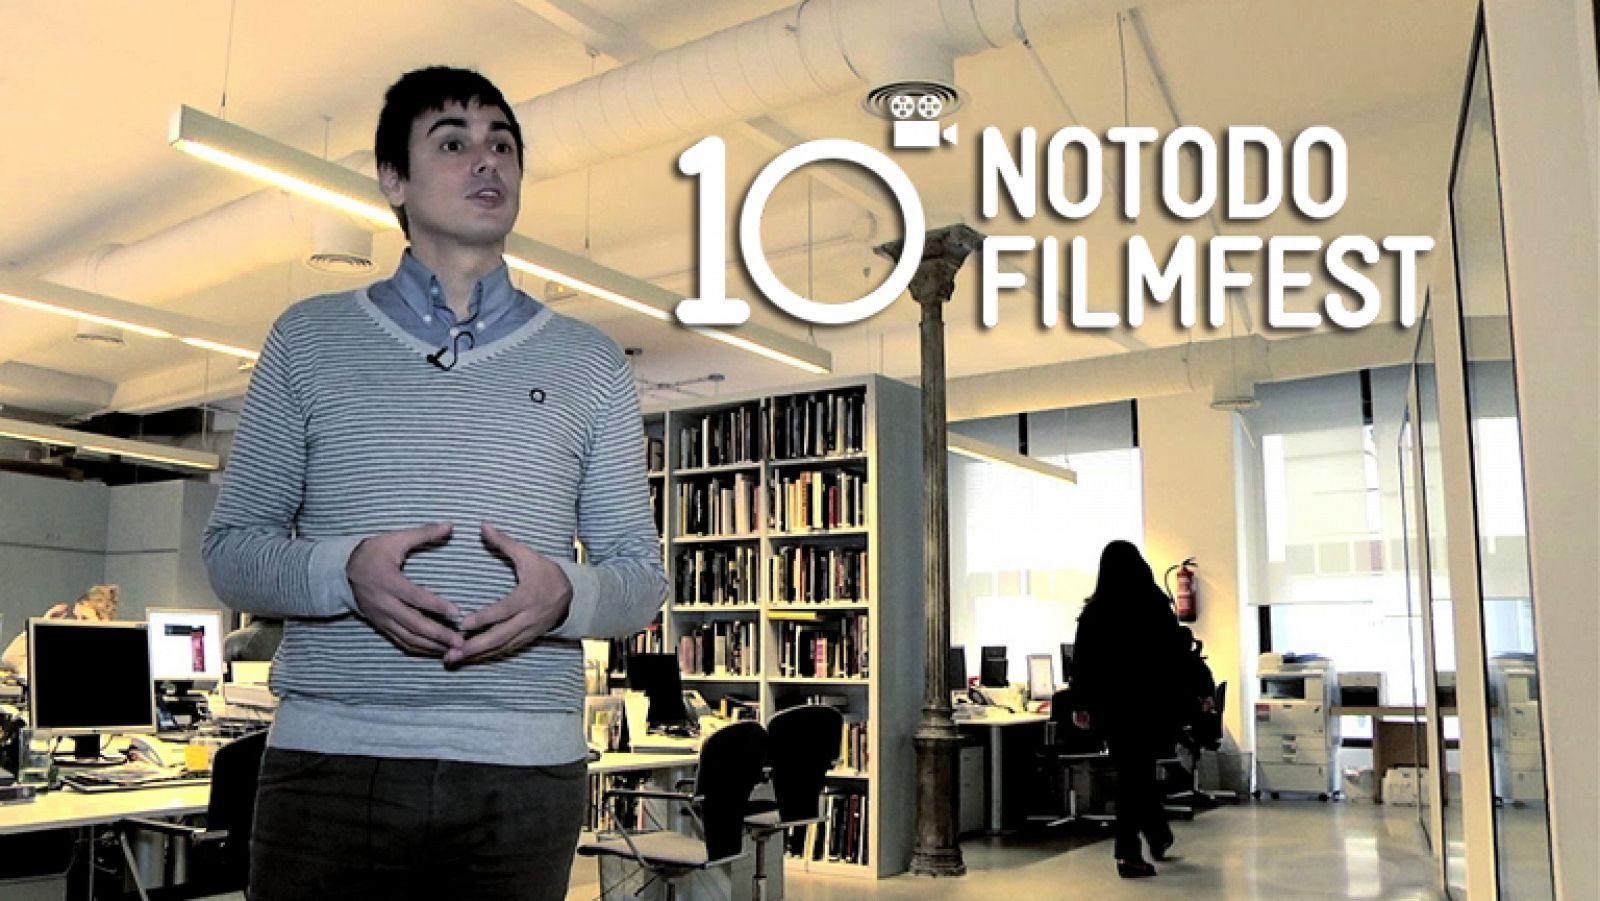 Los cortos favoritos del director - Décimo aniversario del Notodofilmfest